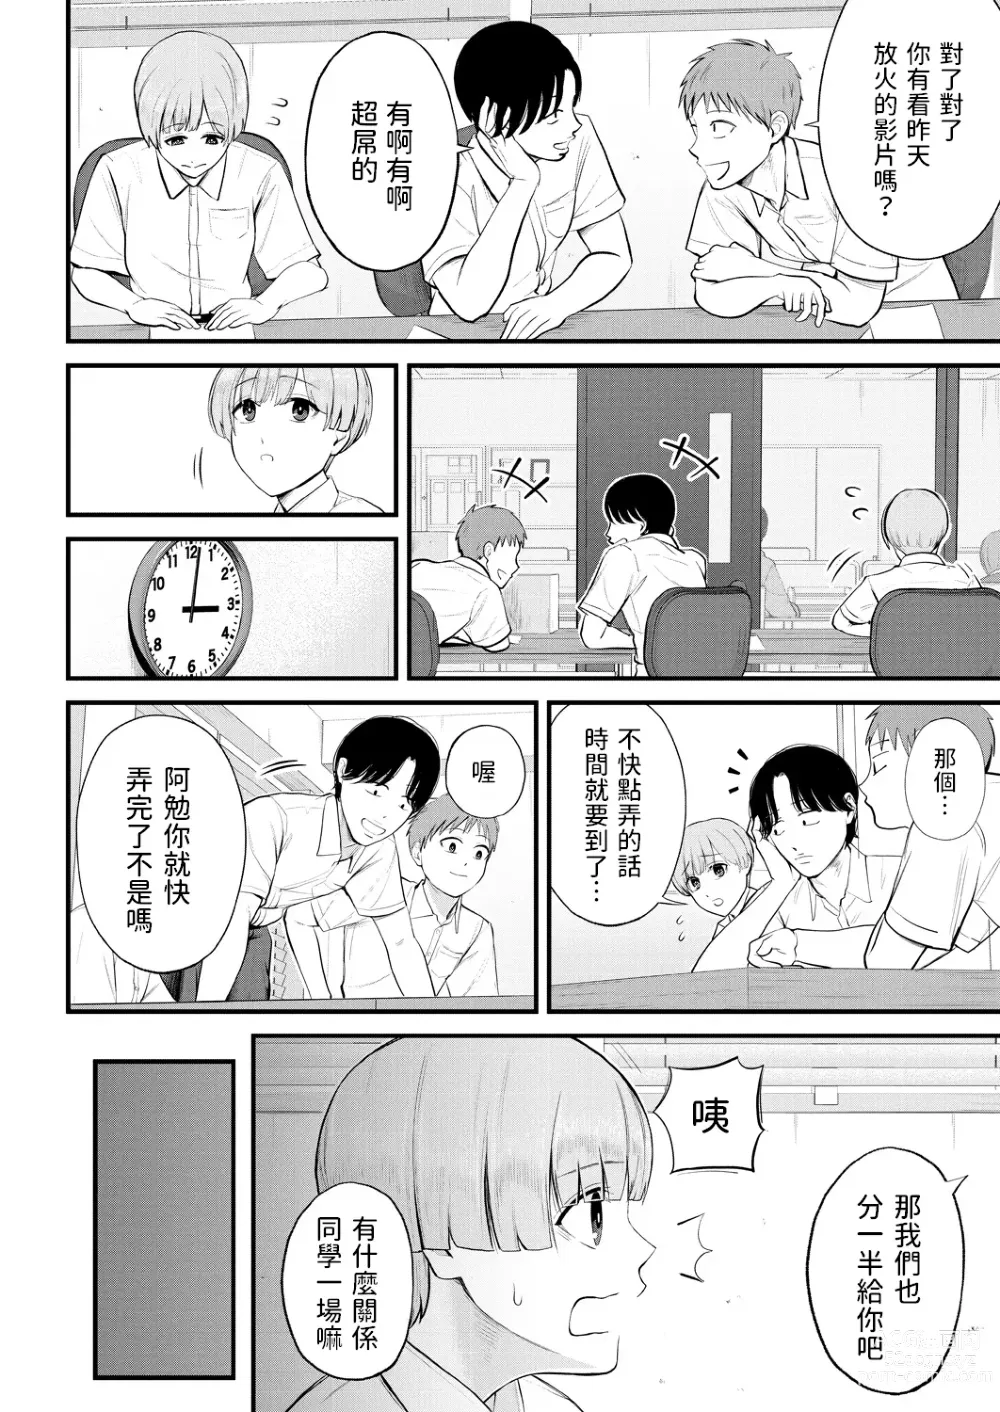 Page 6 of manga Naisho no Shokuba Taiken